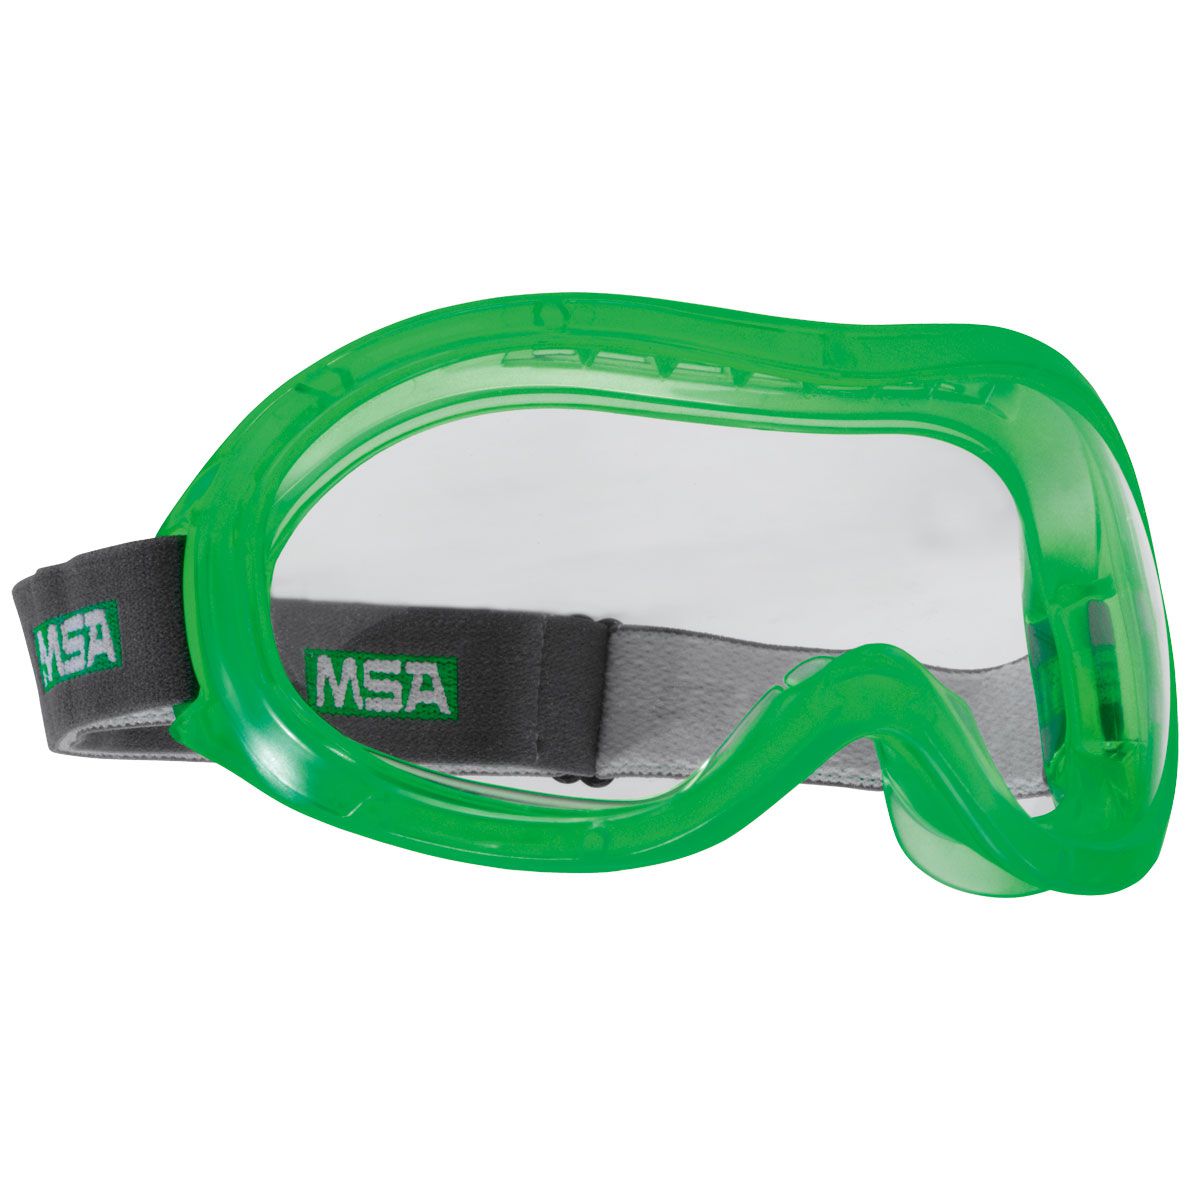 MSA Perspecta GIV 2300 Vollsicht-Schutzbrille - für Brillenträger - kratz- & beschlagfest - EN 166 - Grün/Klar